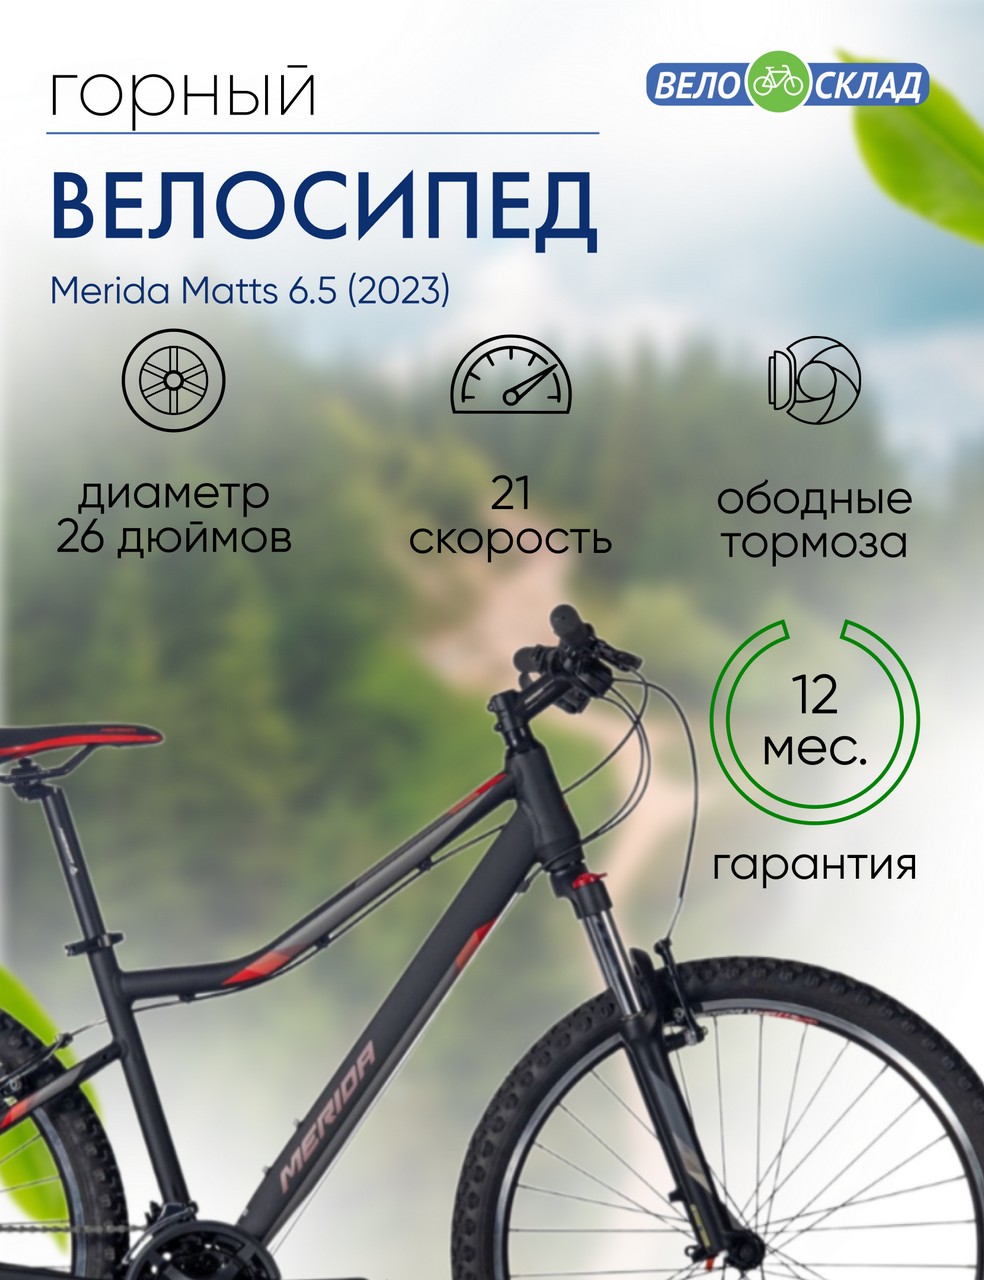 Женский велосипед Merida Matts 6.5, год 2023, цвет Черный-Красный, ростовка 13.5